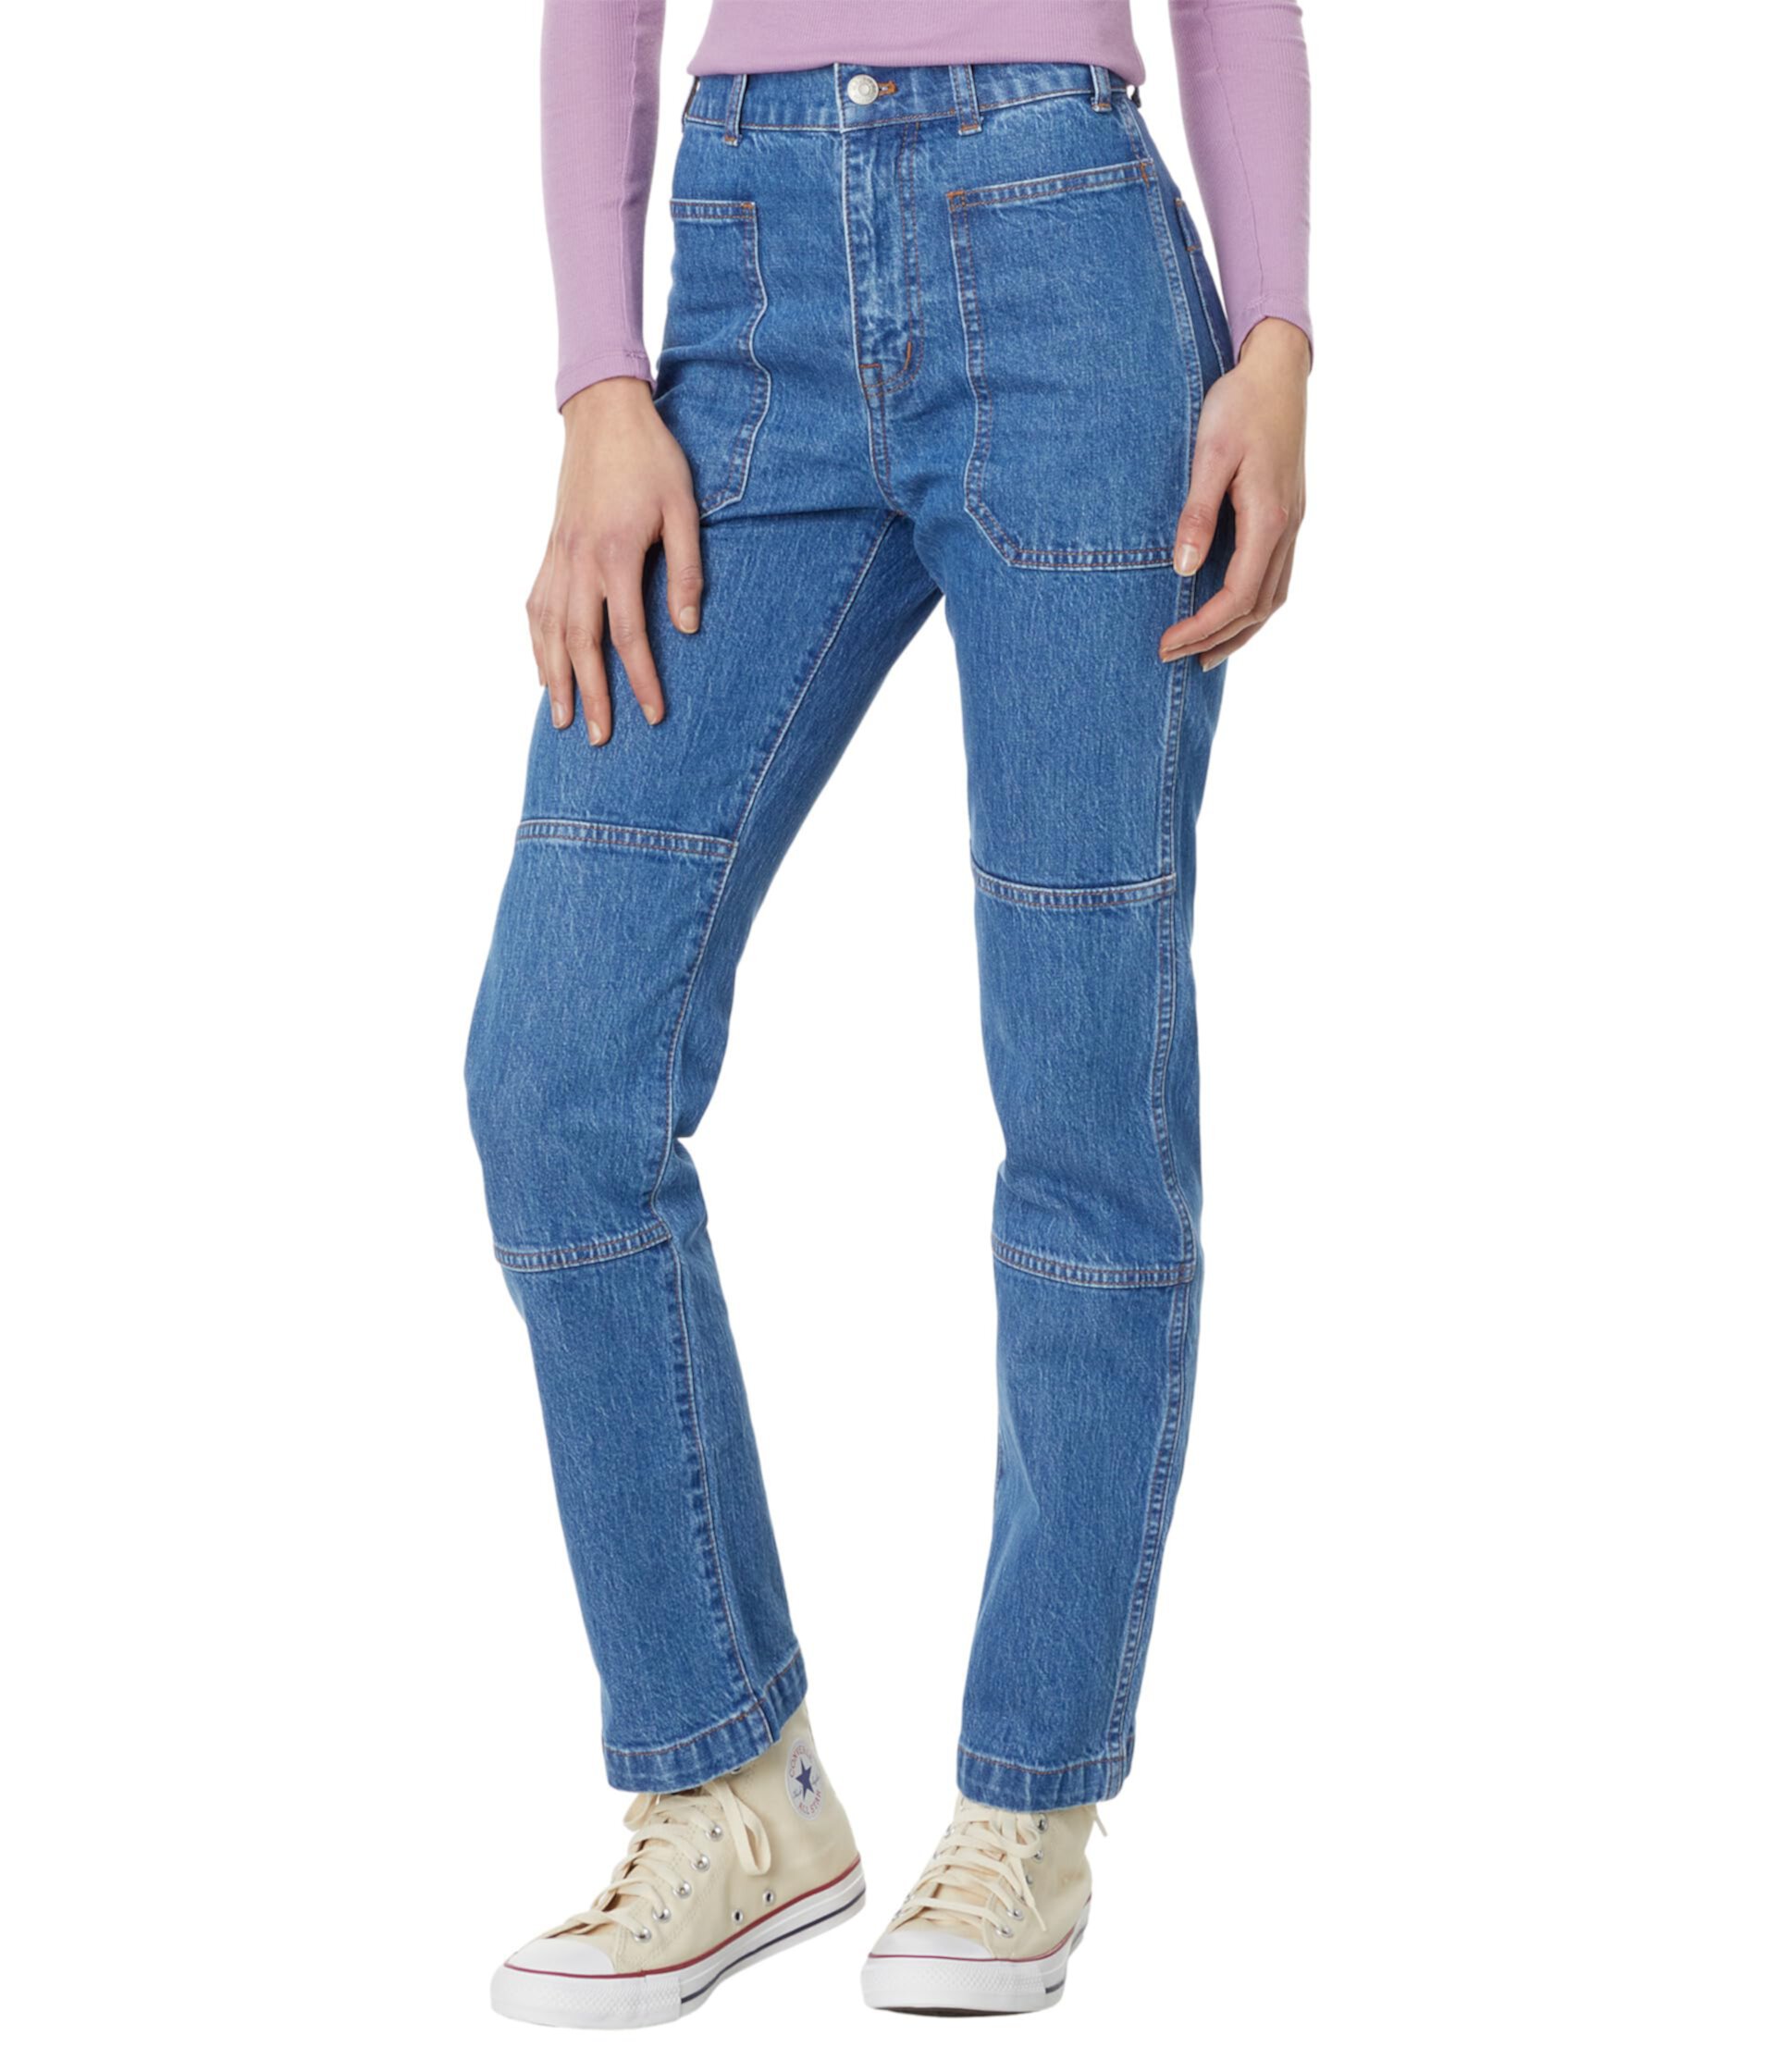 Прямые джинсы карго 90-х годов цвета Fenwood Wash Madewell